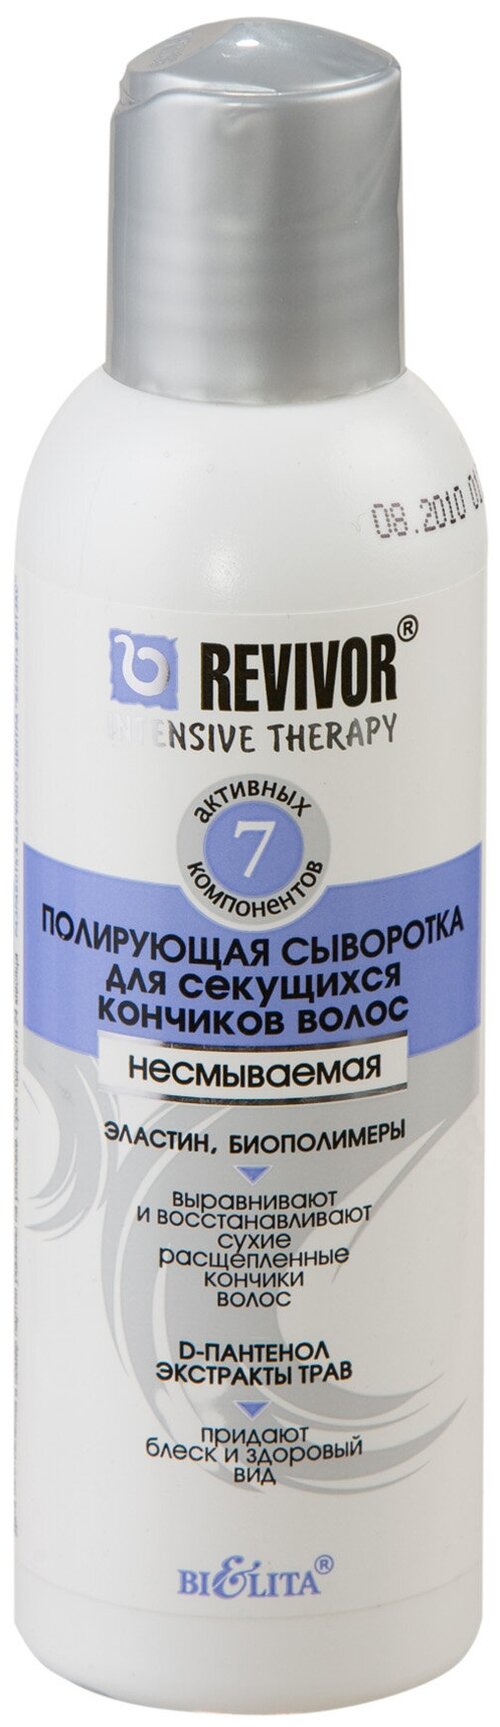 Bielita Revivor Intensive Therapy Полирующая сыворотка для секущихся кончиков волос, 150 мл, бутылка